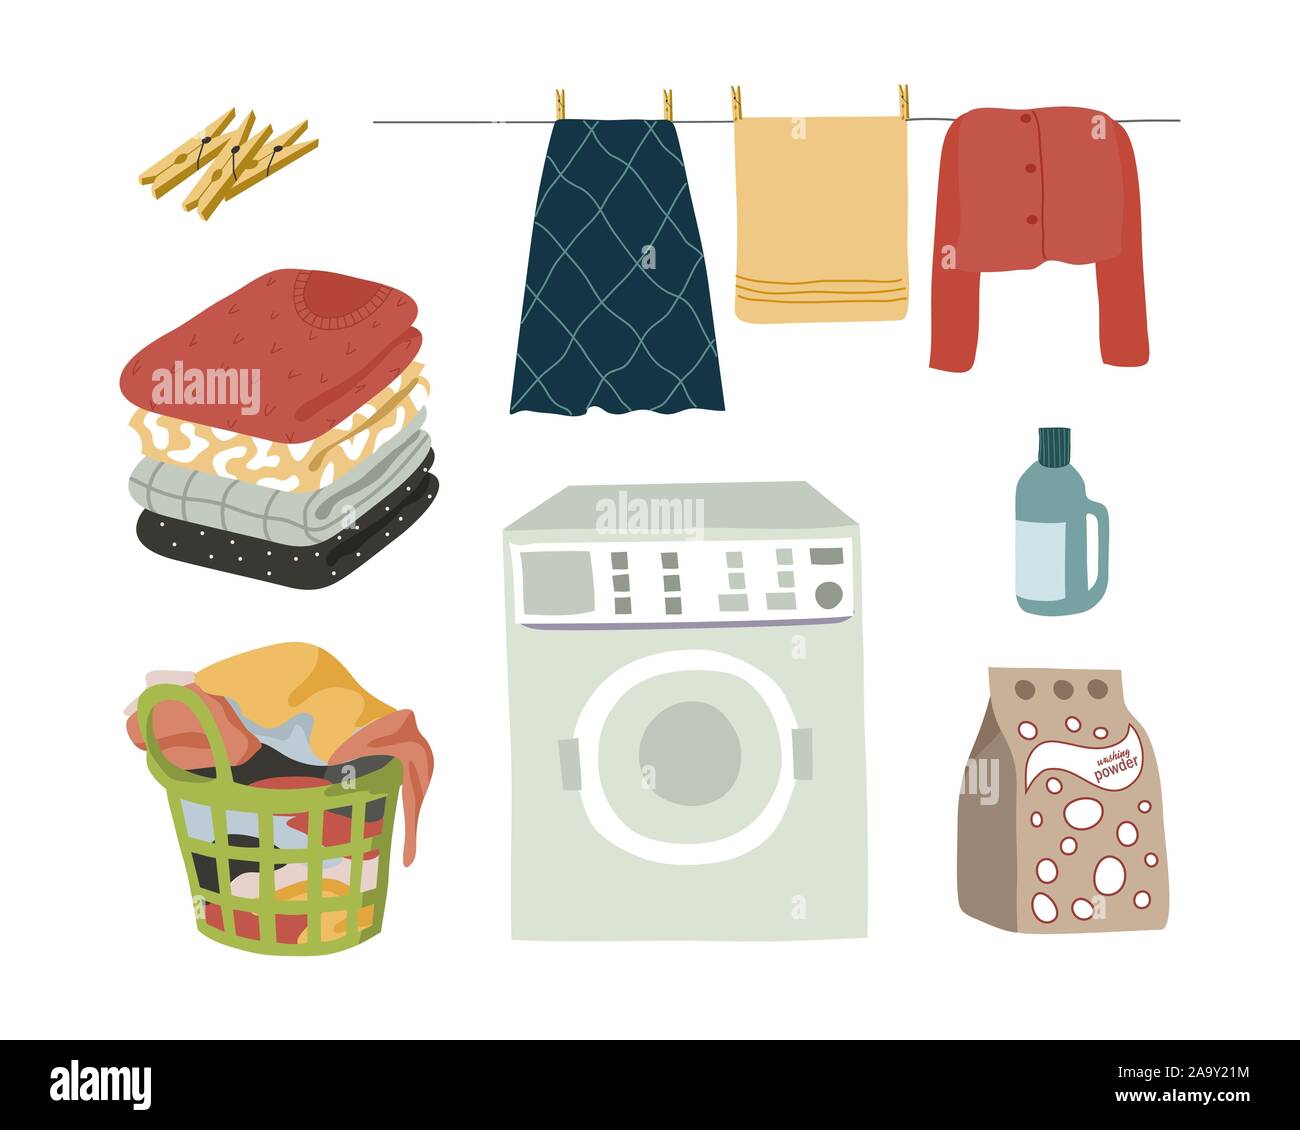 Servizio lavanderia impostare elementi isolati in polvere, lavatrice, vestiti bagnati con clothespins, piegato i vestiti e un cestello con lenzuola sporche. Piatto di vettore Illustrazione Vettoriale